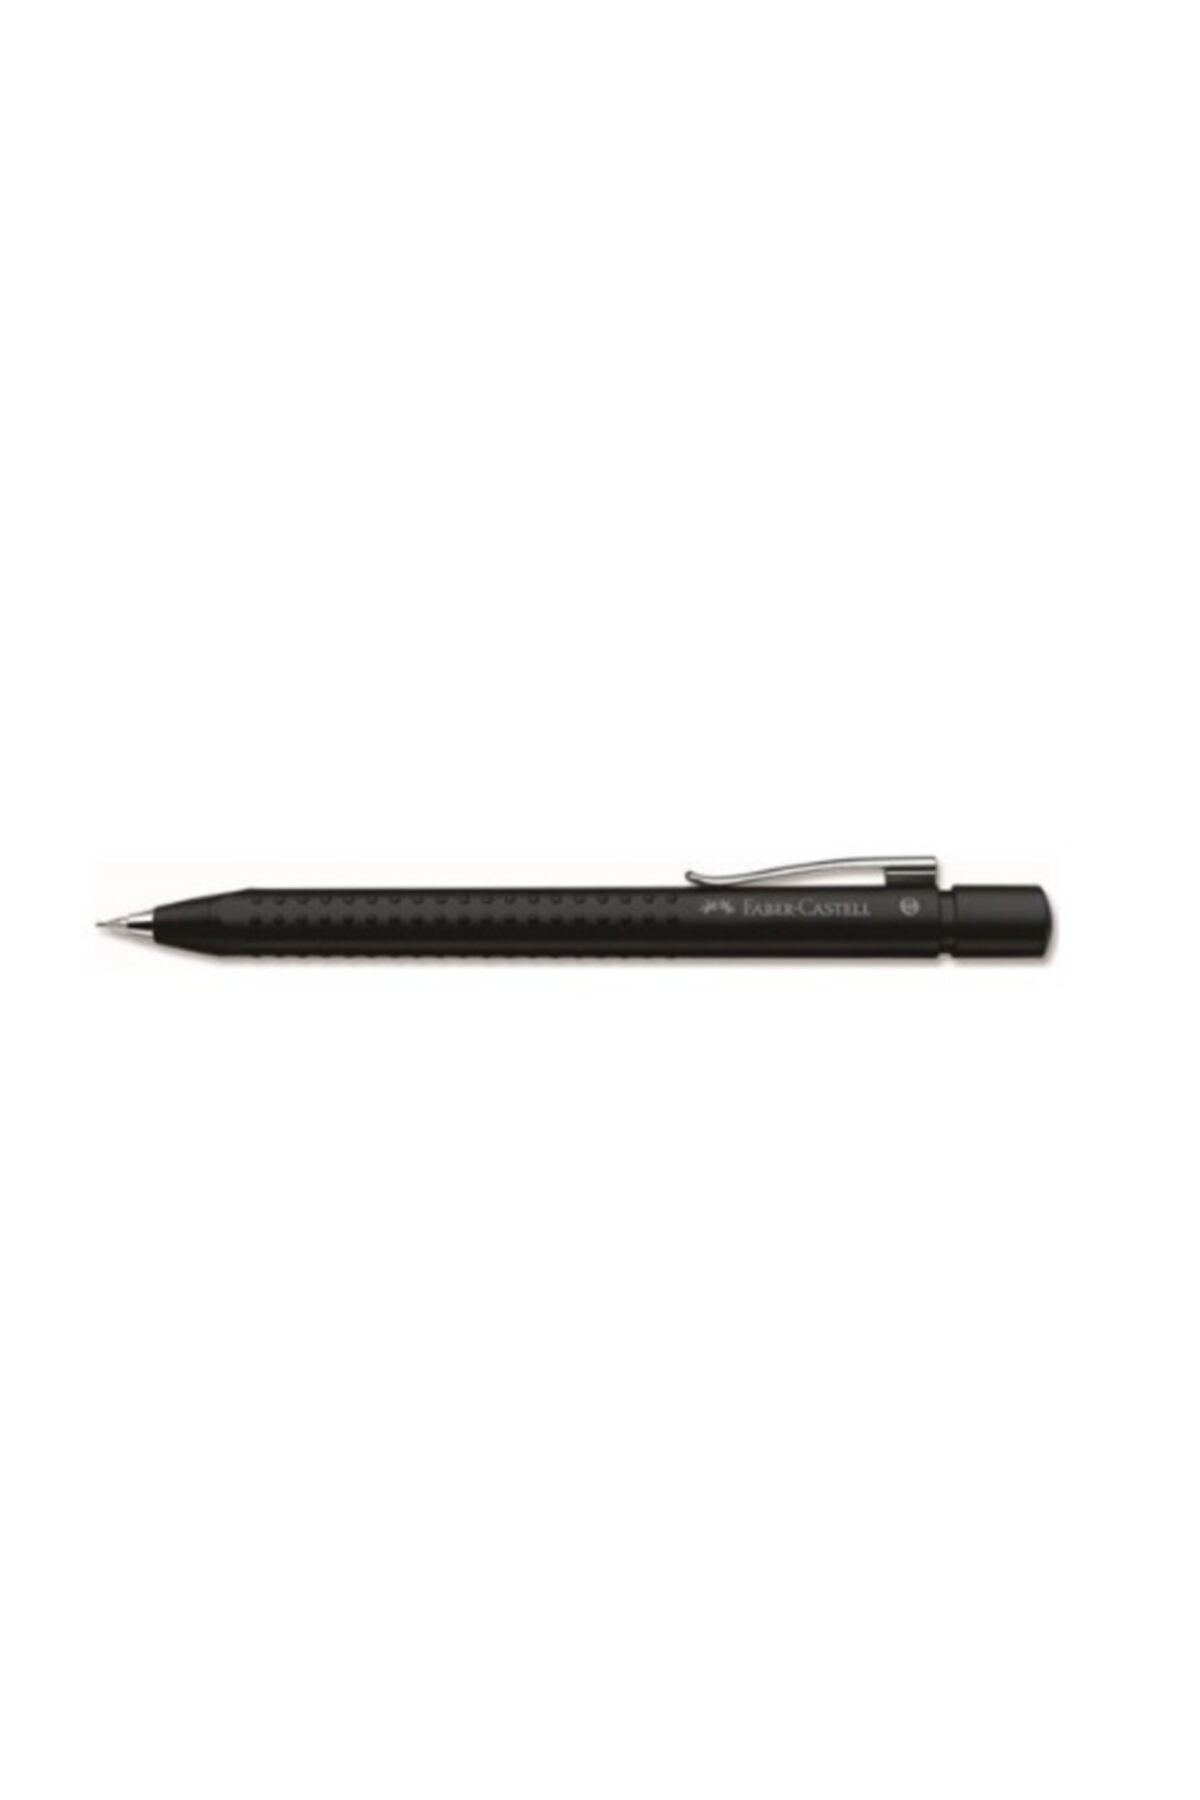 Faber Castell Grip 2011 Versatil Kalem Mat Siyah 0.7mm